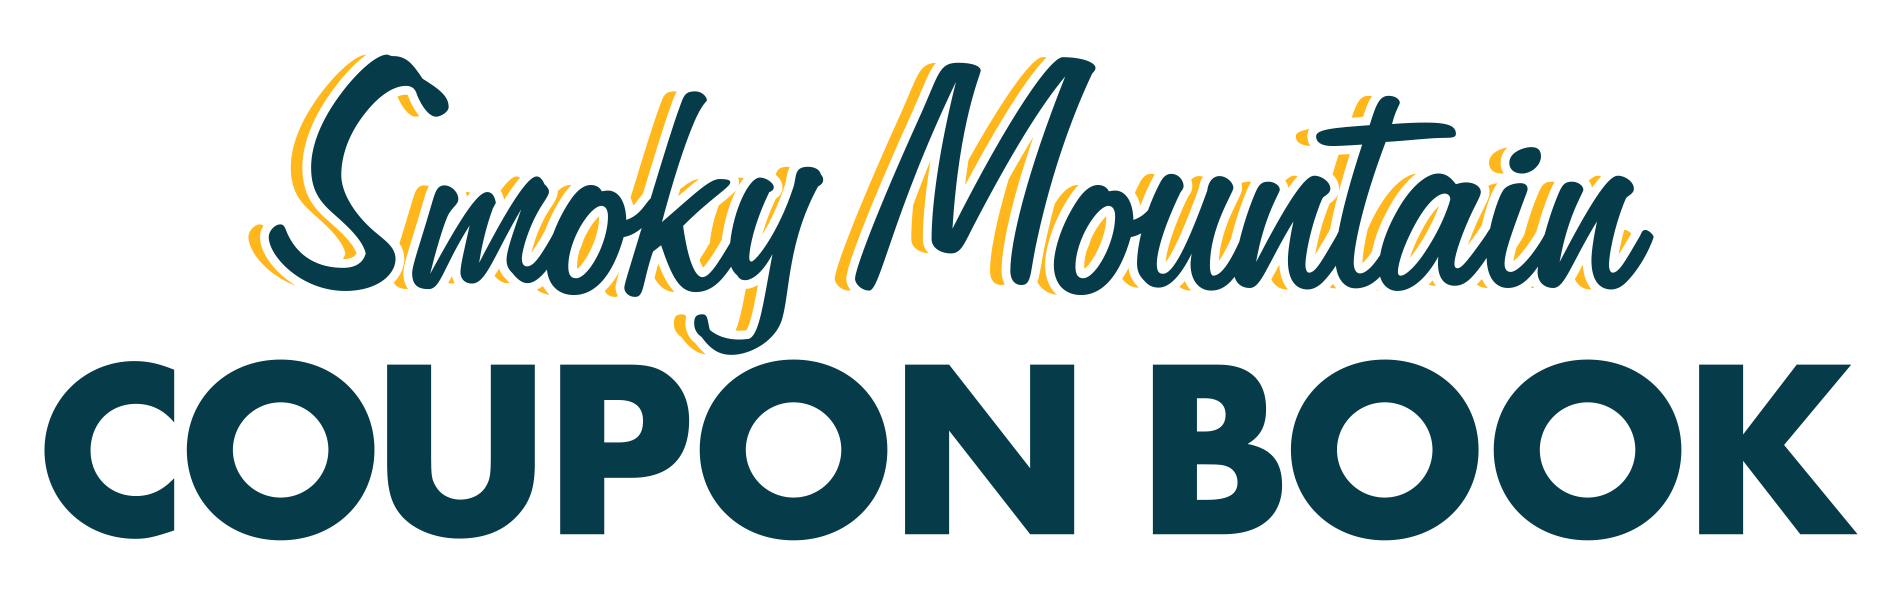 Smoky Mountain Coupon Book